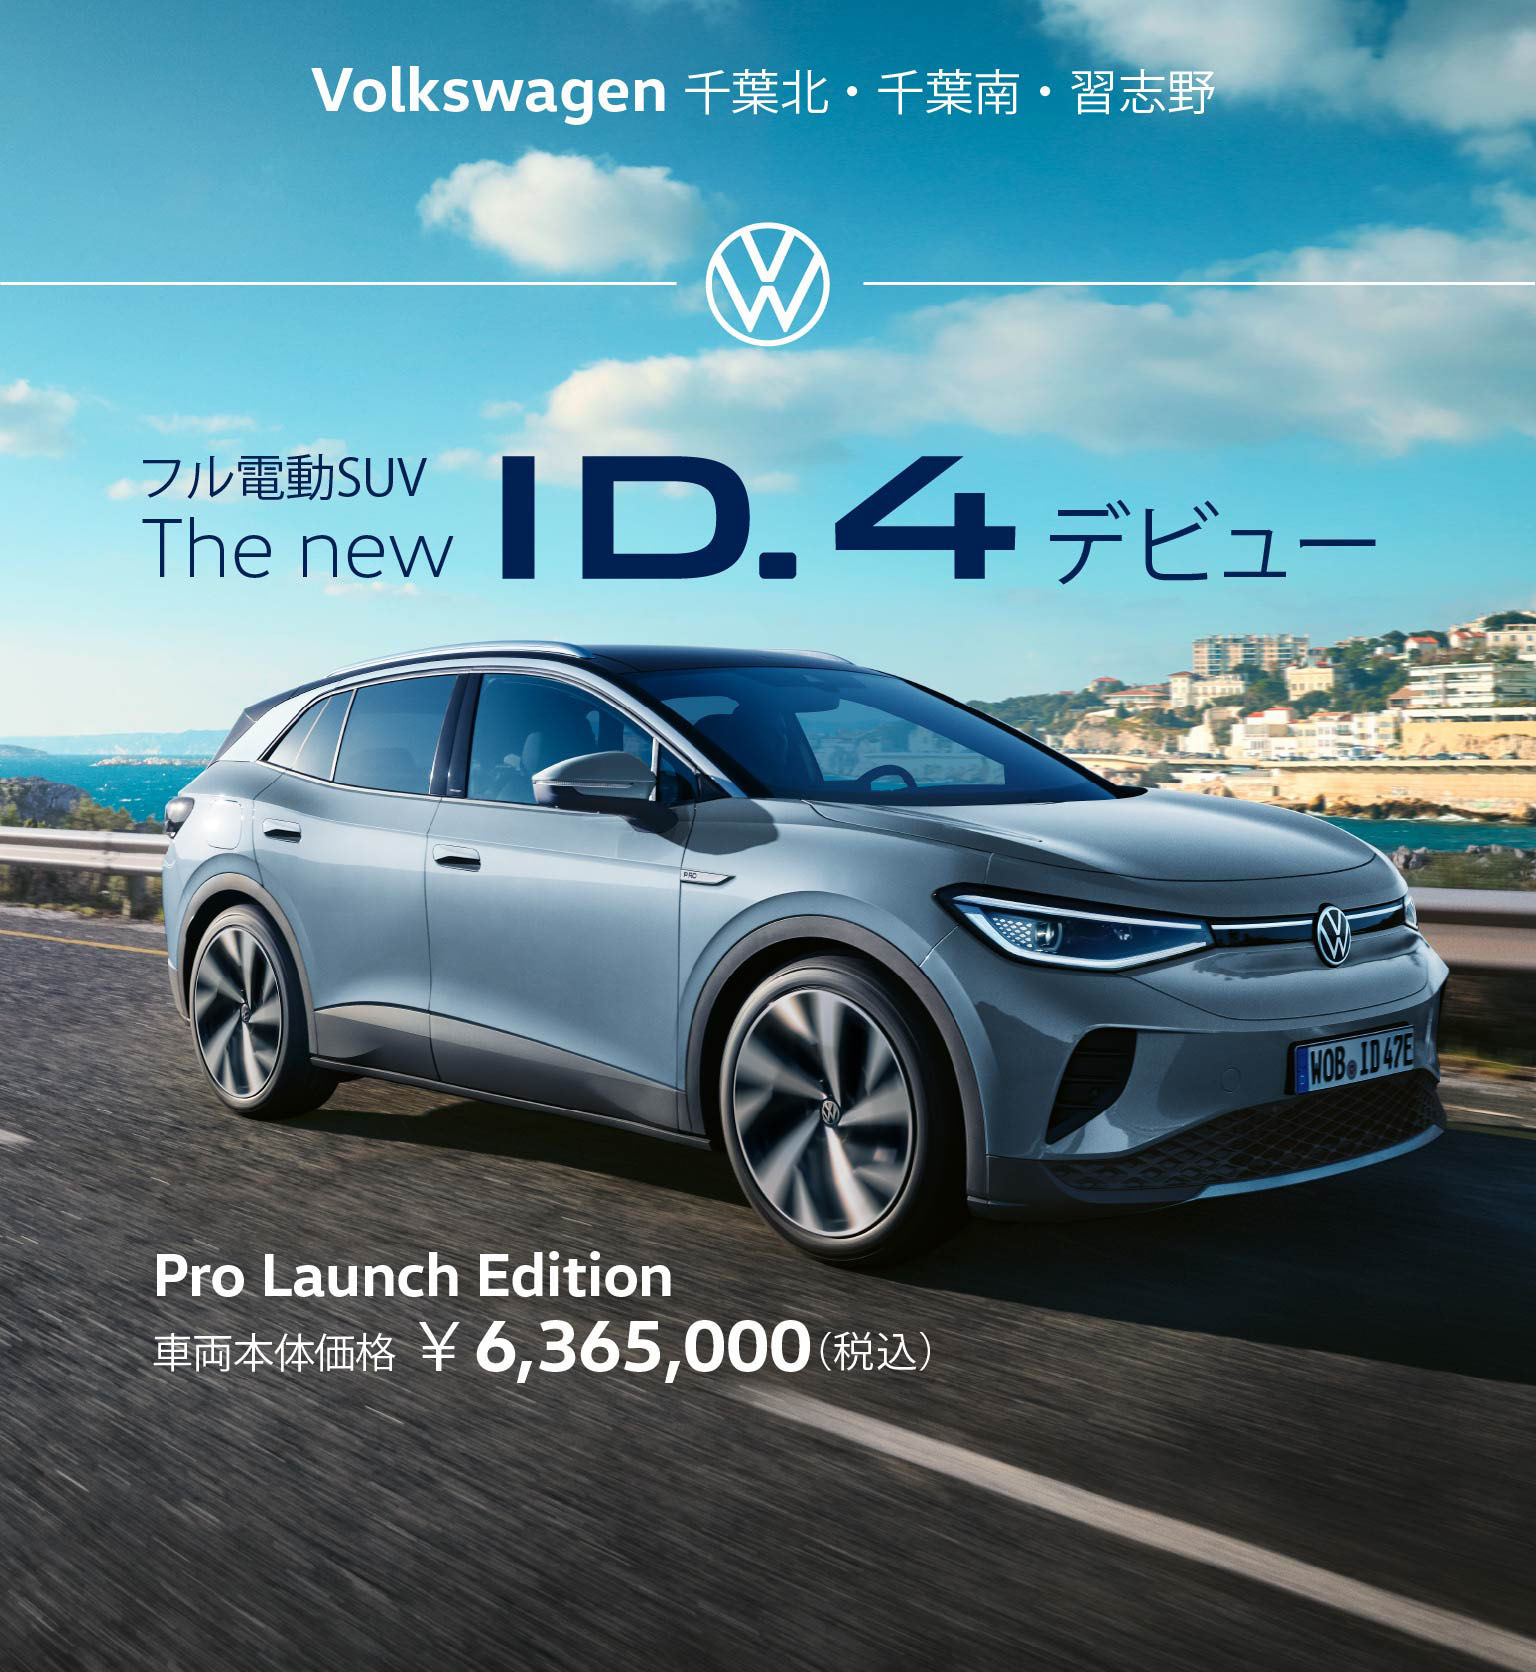 フル電動SUV The new ID.4デビュー